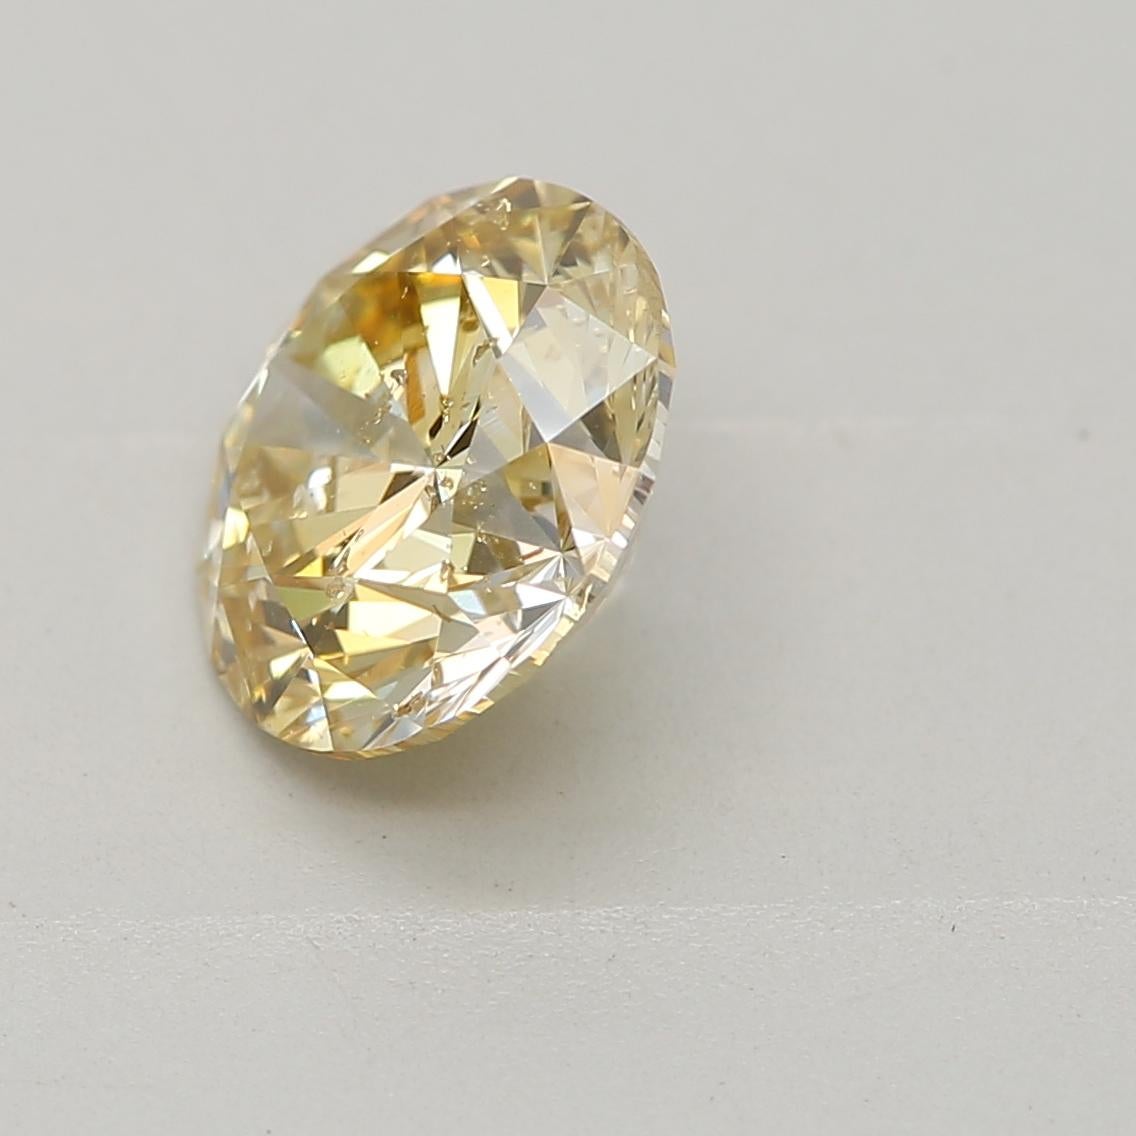 brownish yellow diamond